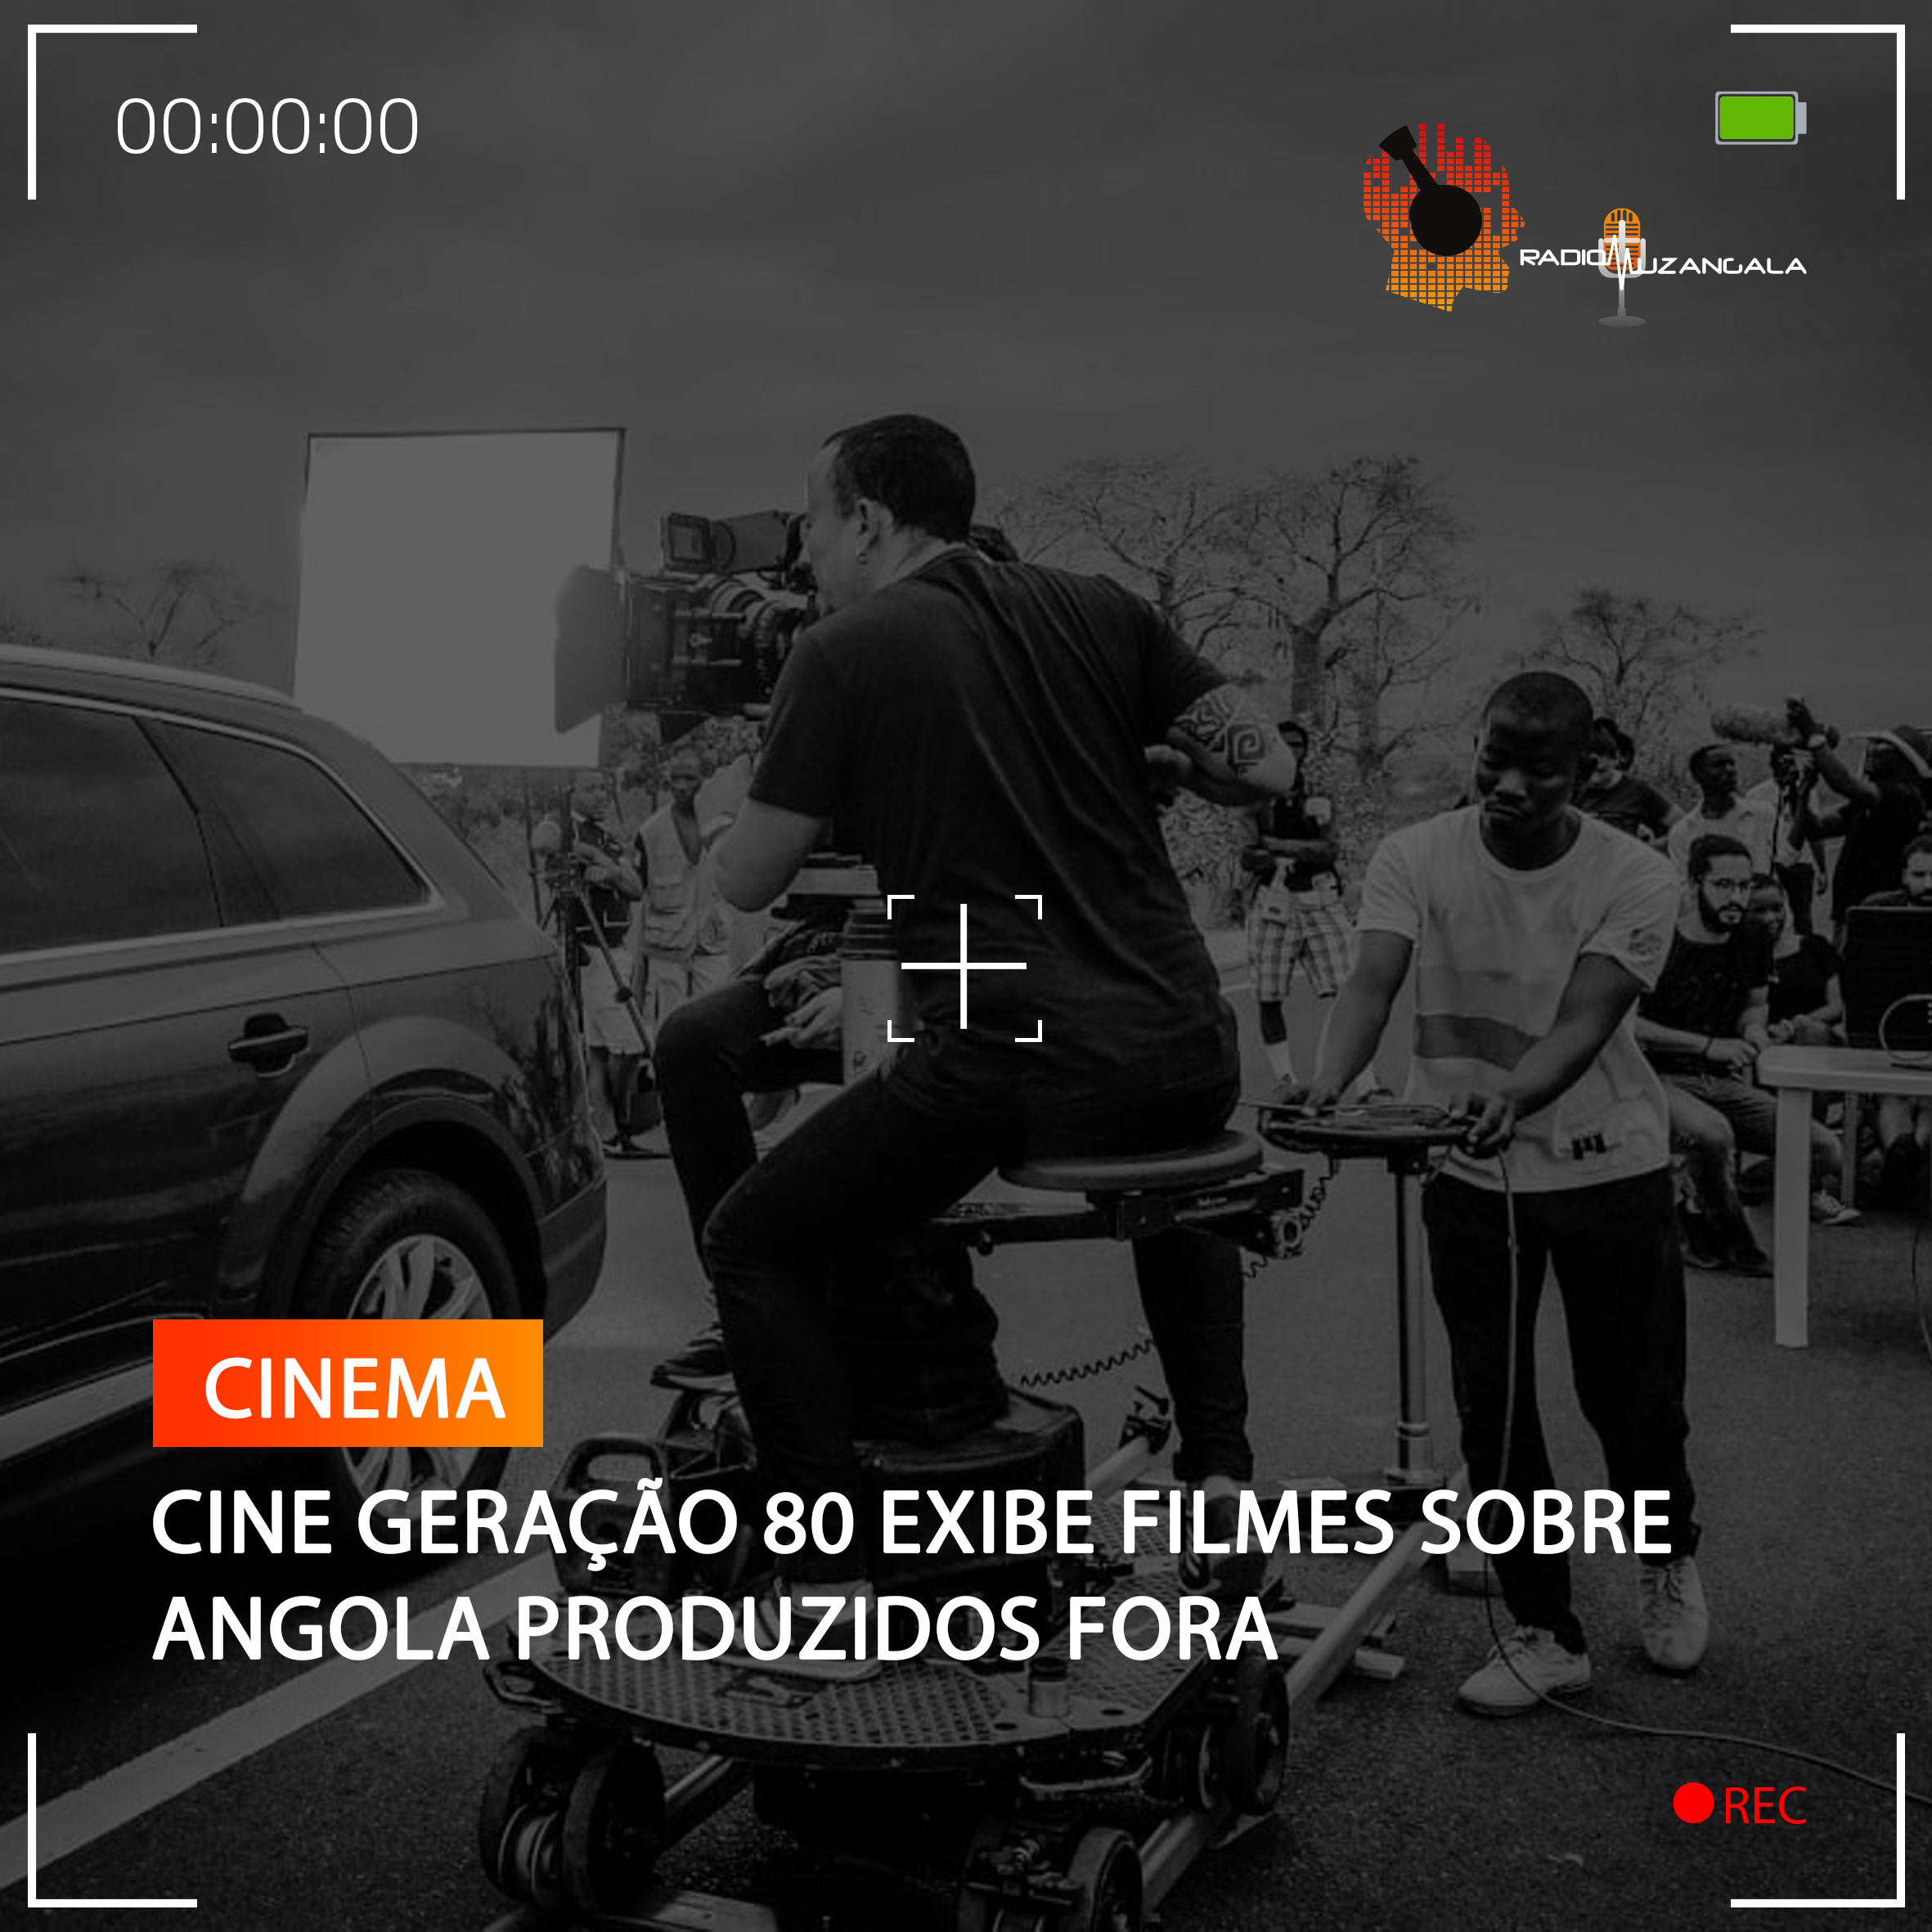  CINE GERAÇÃO 80 EXIBE FILMES SOBRE ANGOLA PRODUZIDOS FORA